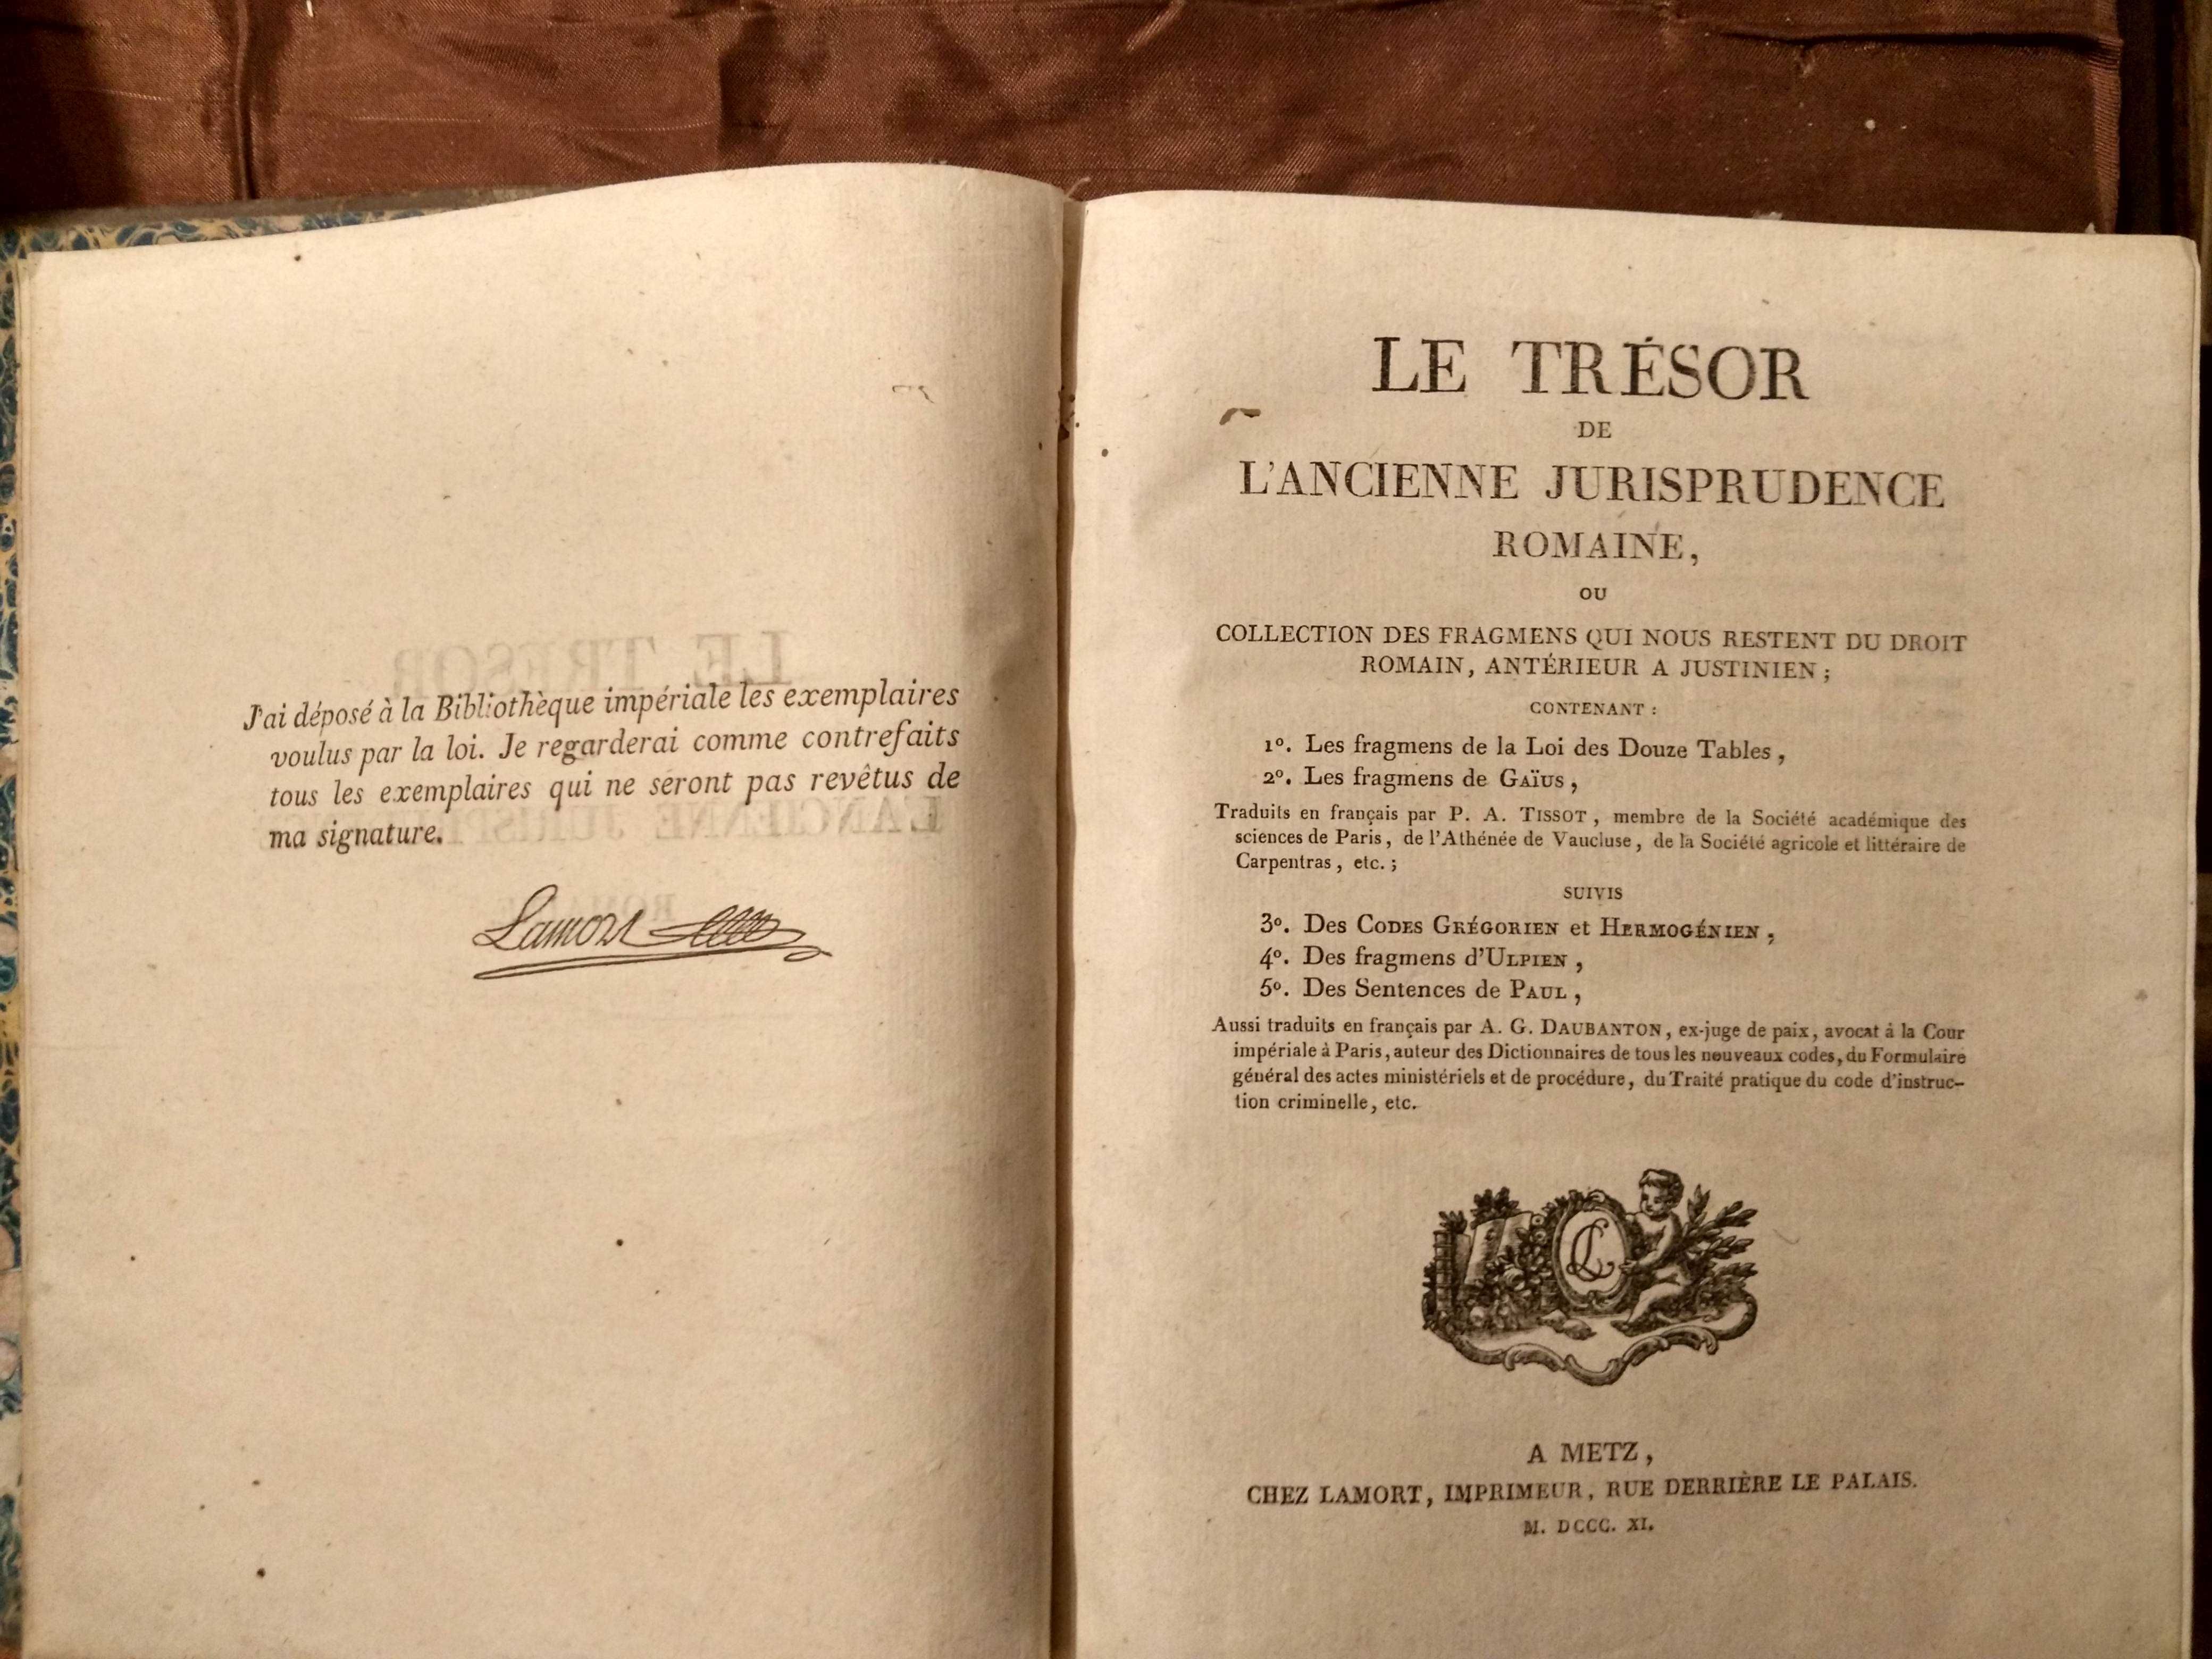 Le trésor de l'ancienne jurisprudence romaine - Ano de 1811